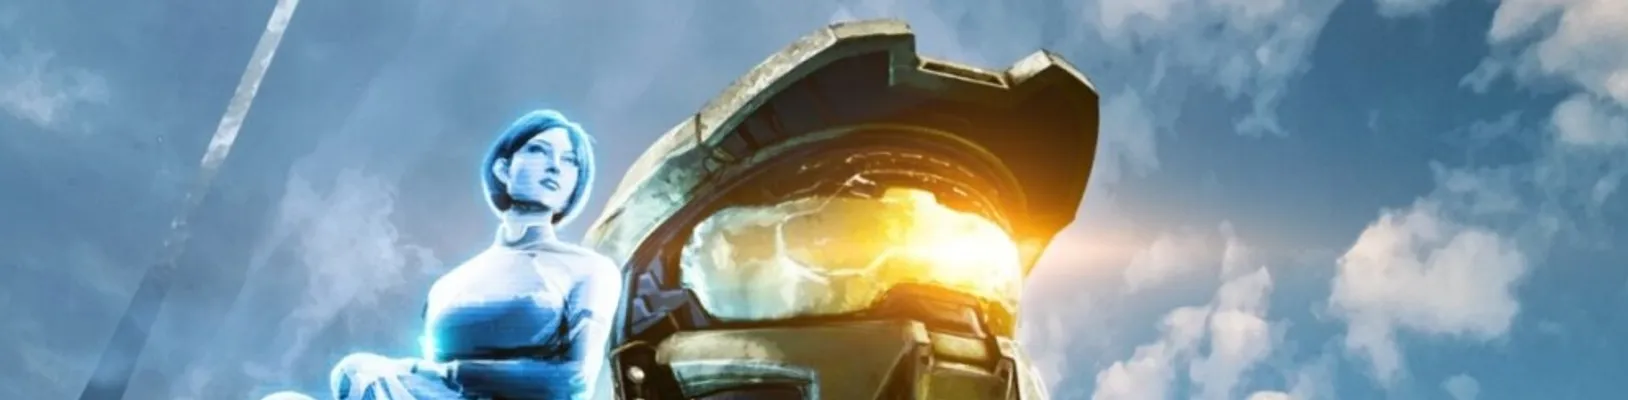 Rekordní výsledky pro Xbox. Daří se i hrám Halo Infinite a Forza Horizon 5